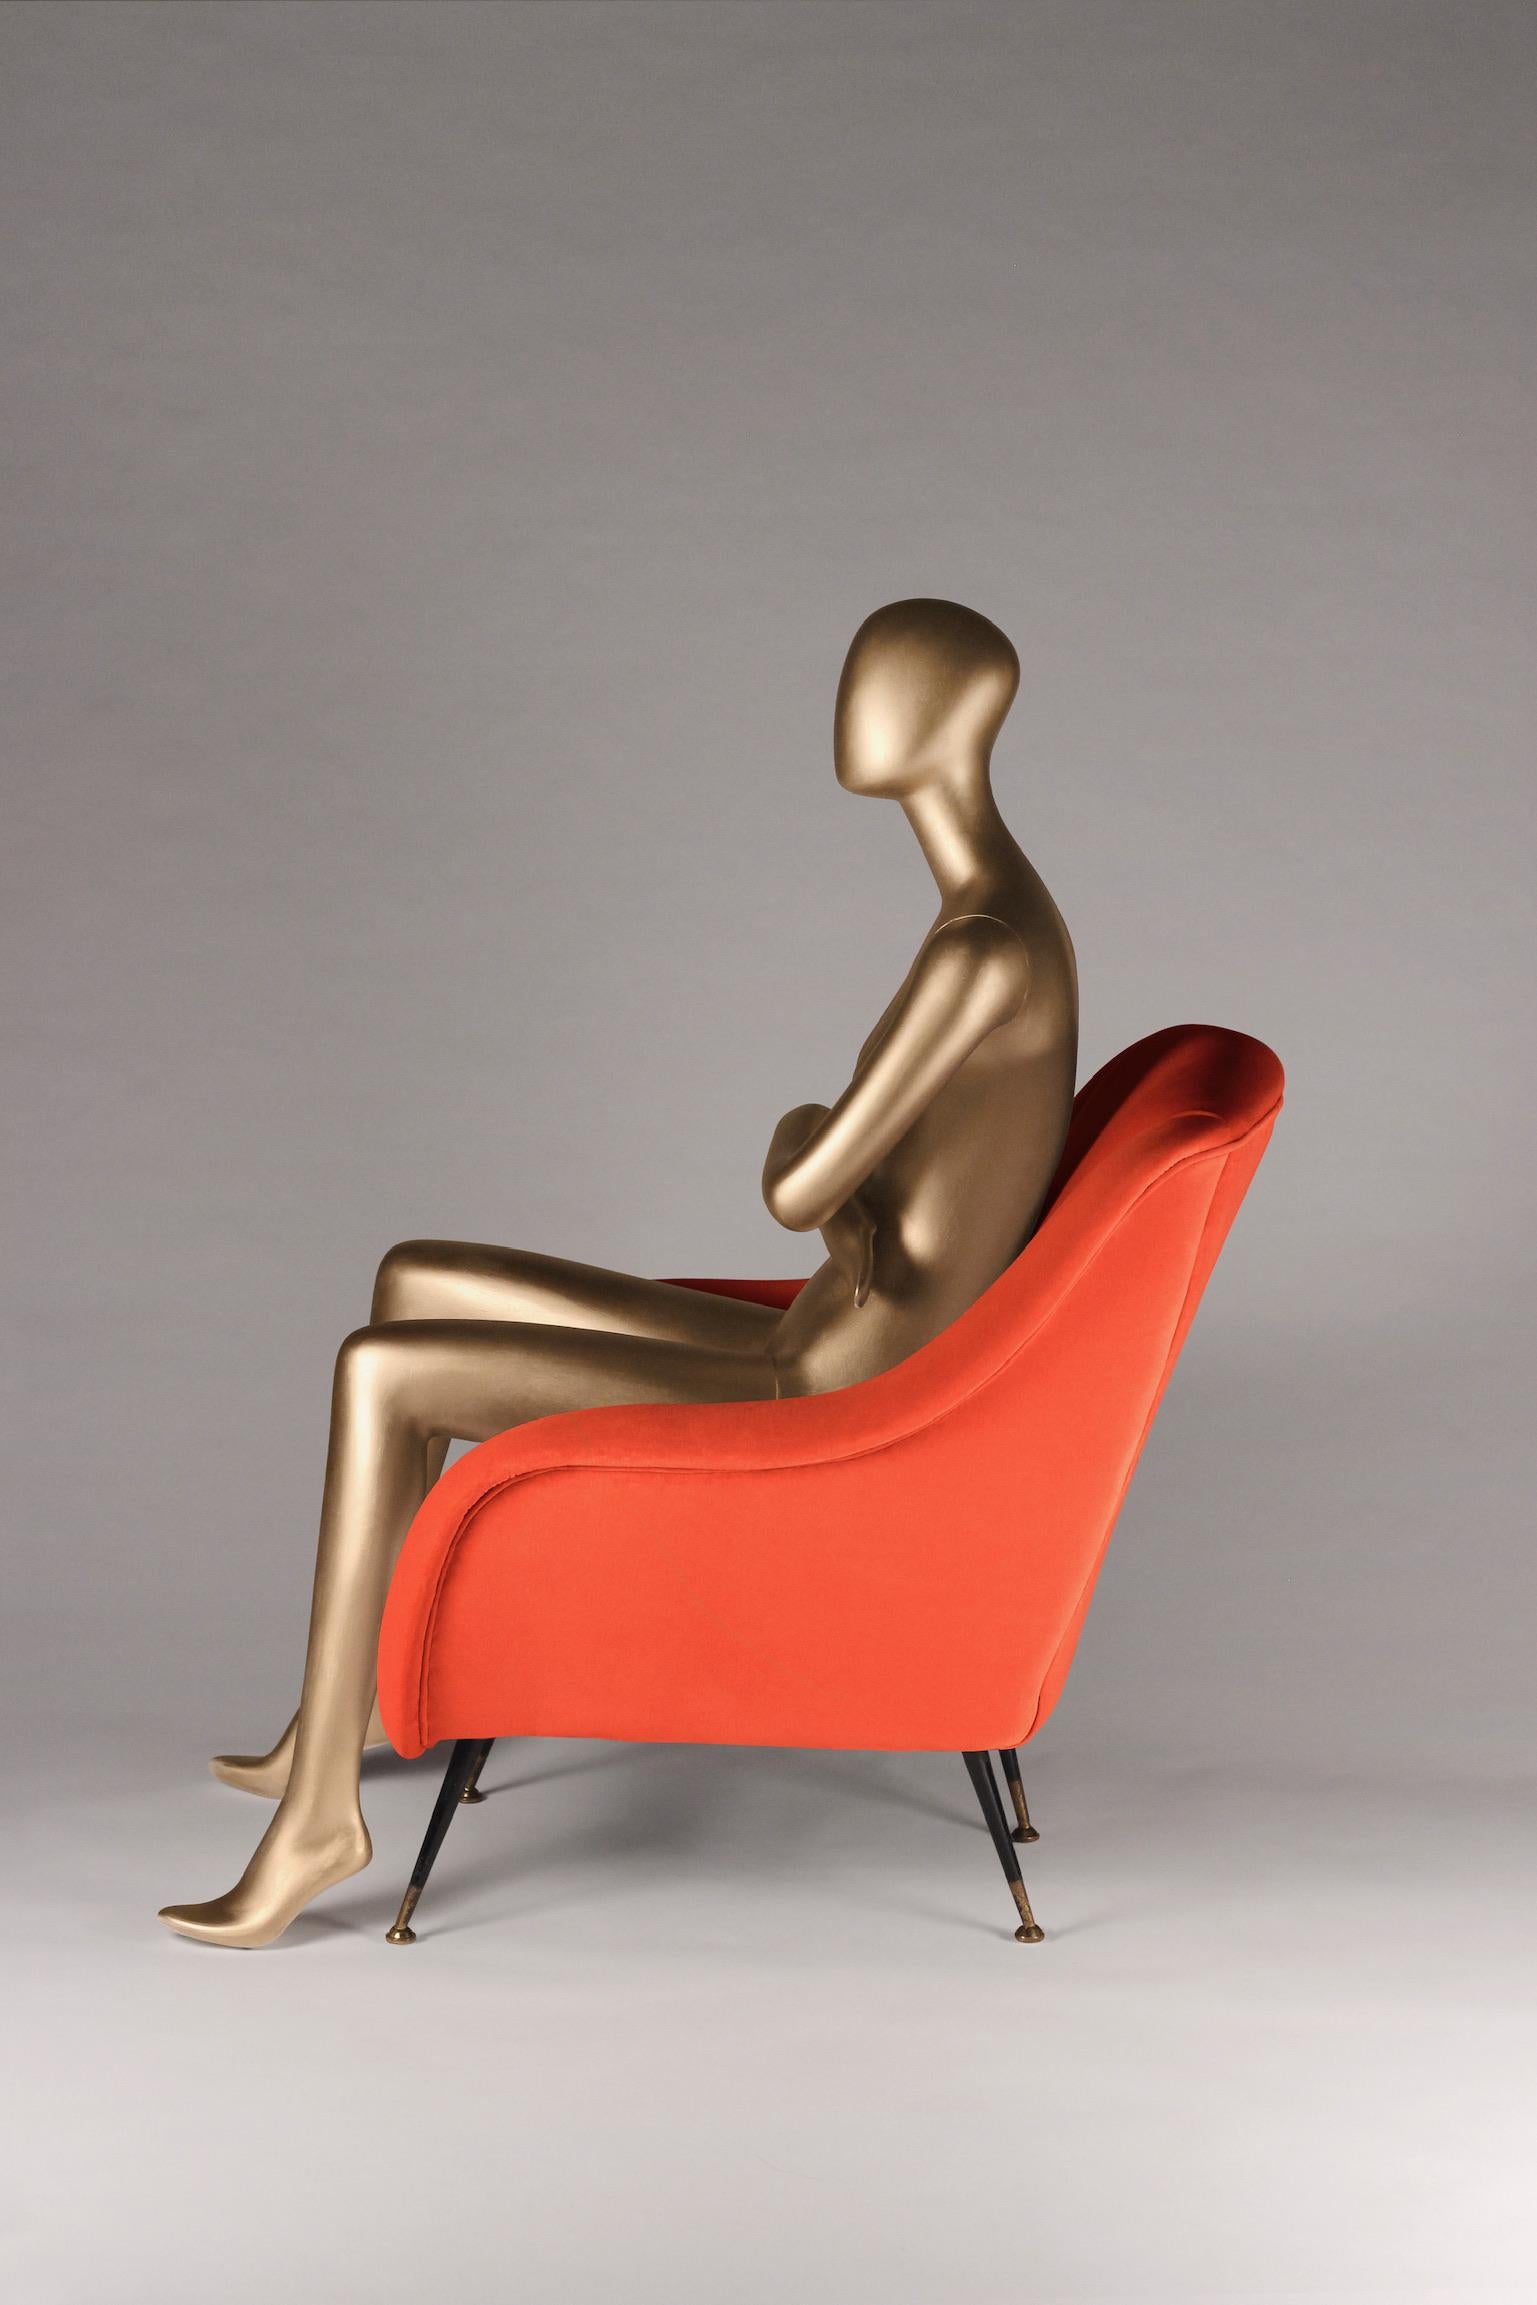 La chaise Sophia s'inspire du design italien des années 50 et est maintenant créée par des artisans anglais pour le 21ème siècle. Nous avons mis au point une chaise longue avec la possibilité d'en produire n'importe quel nombre selon vos